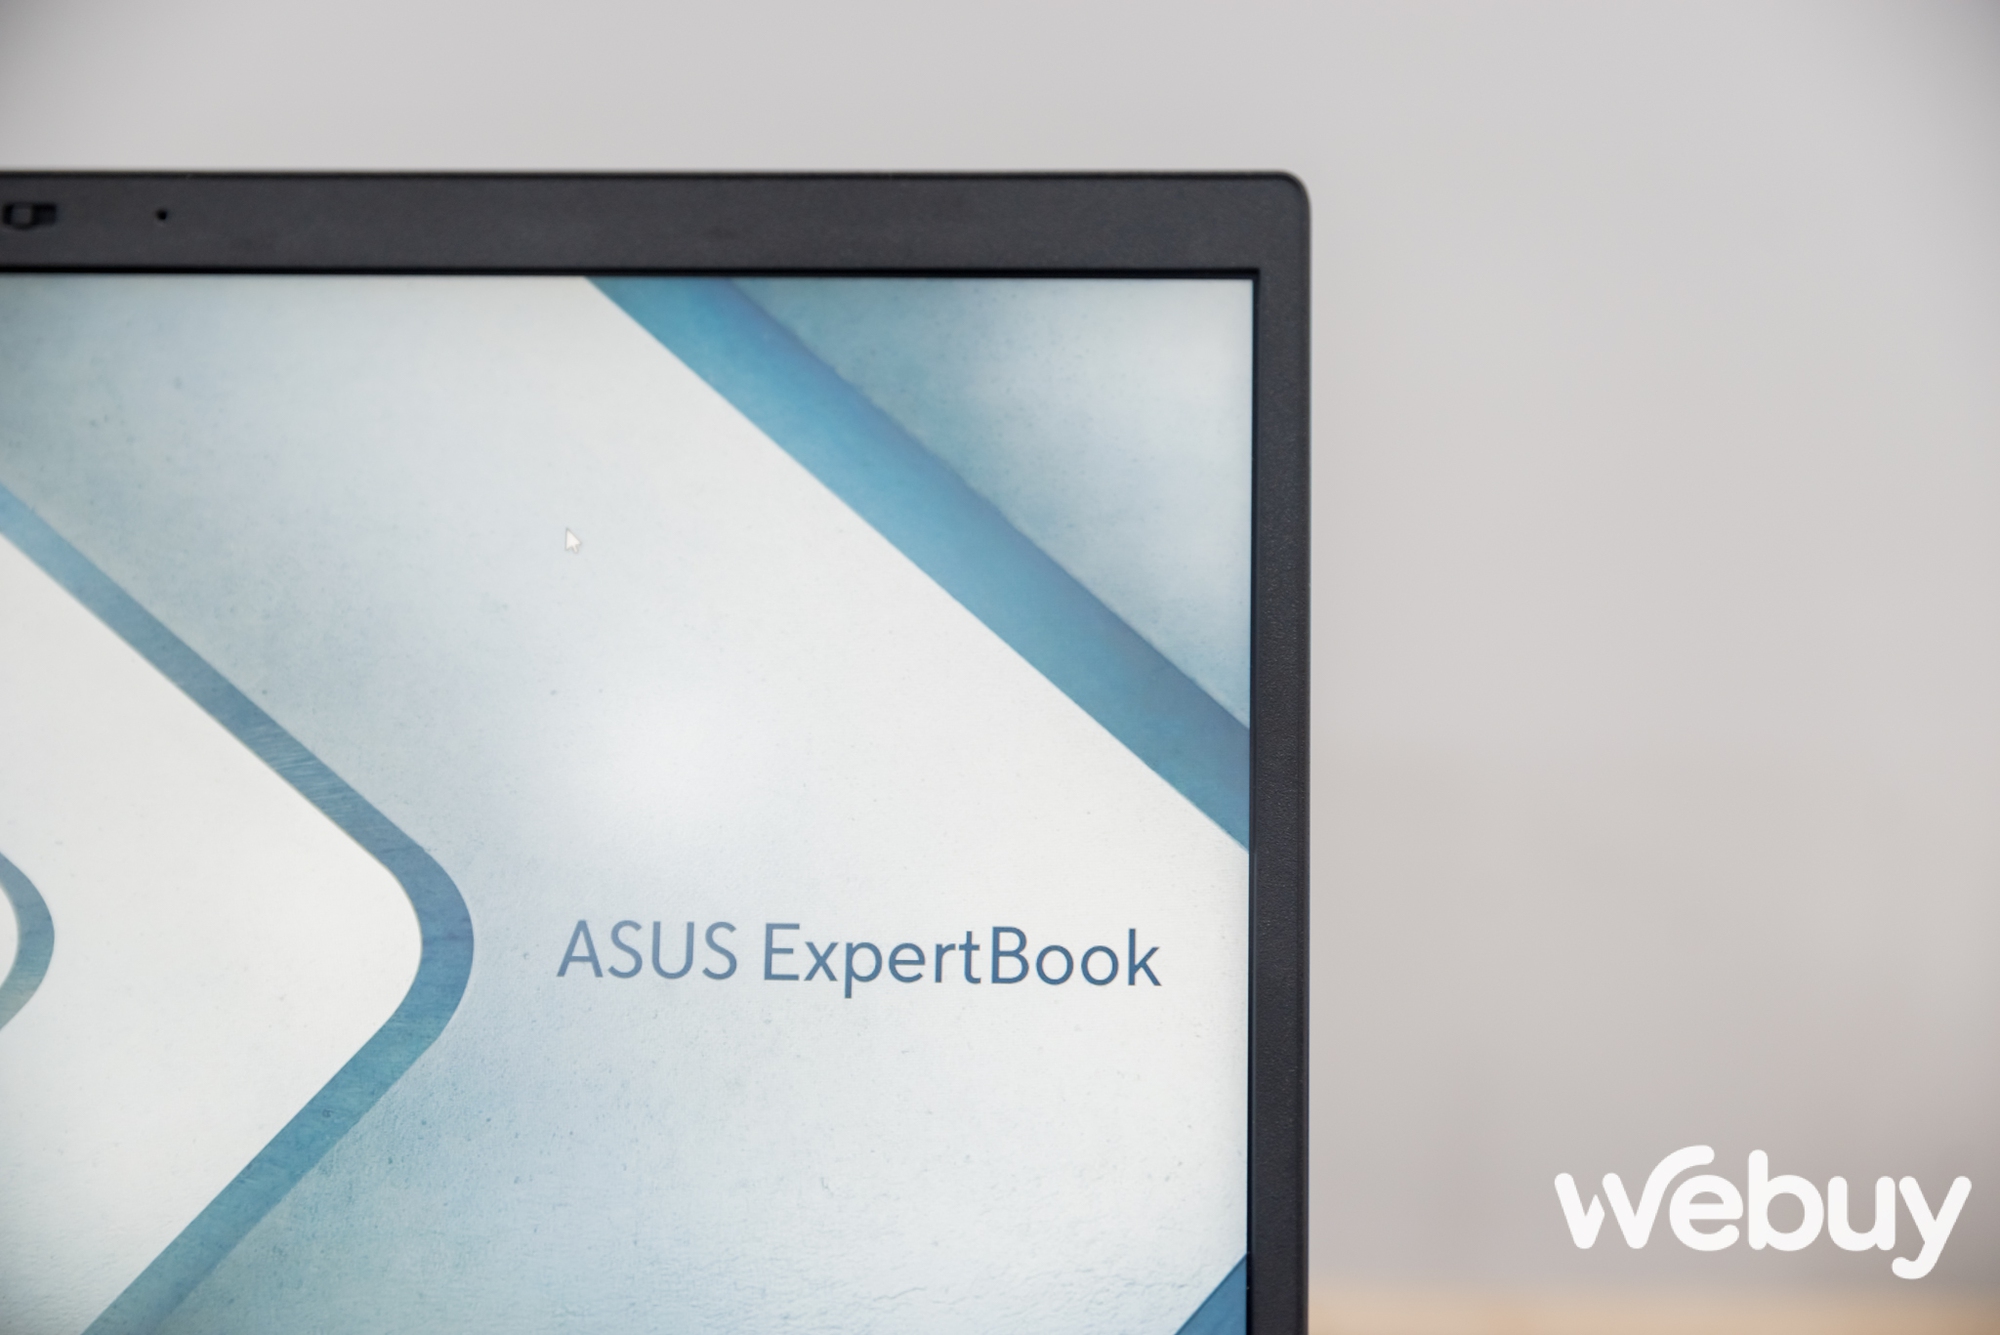 ASUS giới thiệu loạt laptop ExpertBook thế hệ mới, đa dạng lựa chọn hướng đến đối tượng khách hàng doanh nghiệp - Ảnh 4.